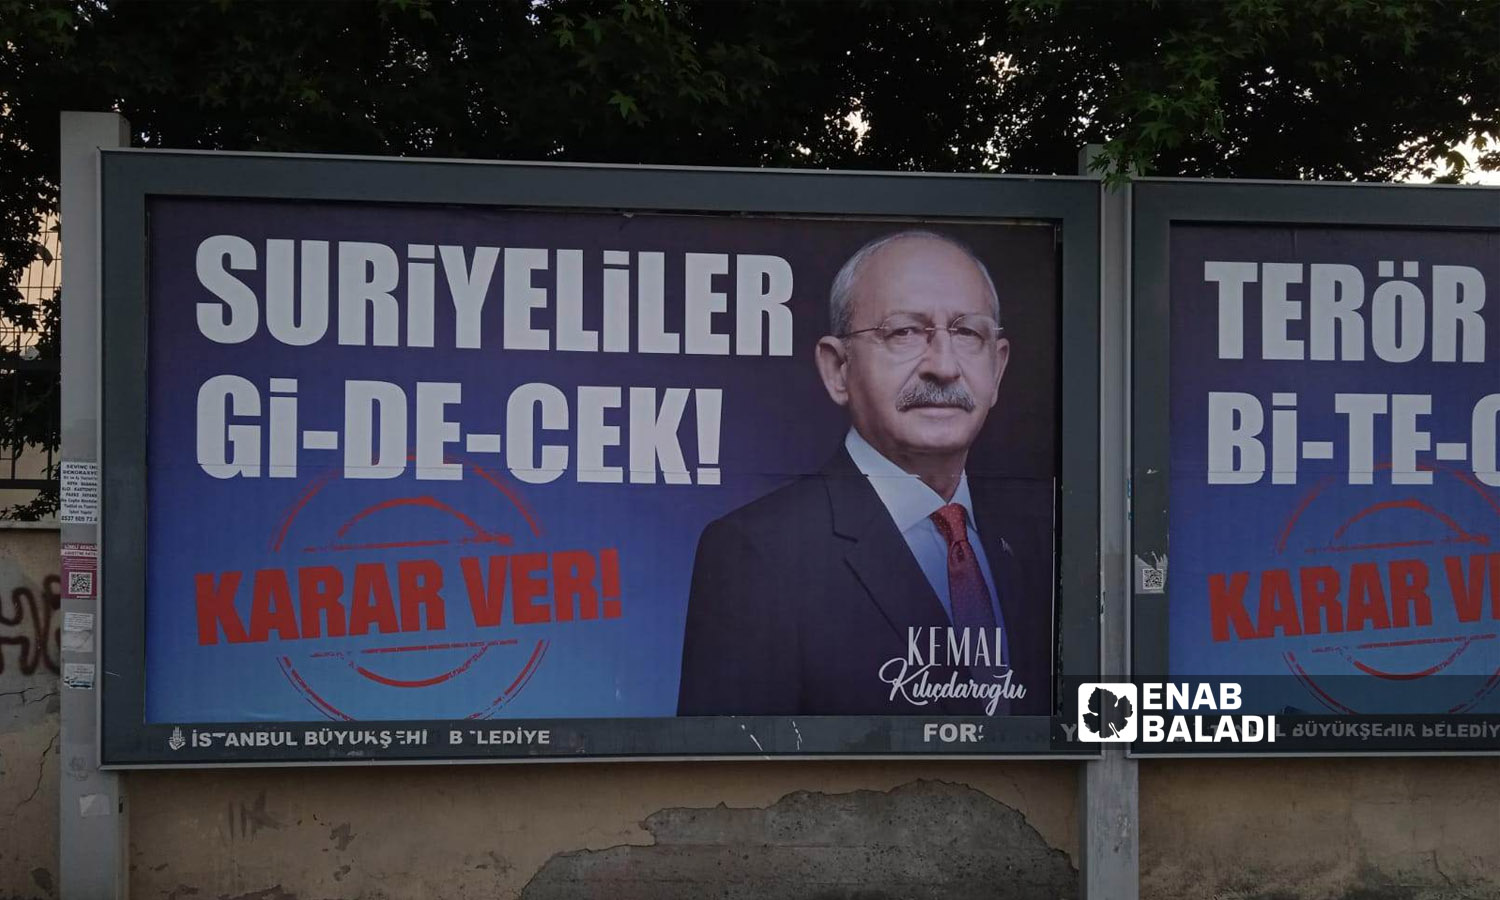 لافتة علّقت في اسطنبول تحمل وعدًا بترحيل السوريين في حال فازت المعارضة بالانتخابات - 23 أيار 2023 (عنب بلدي)